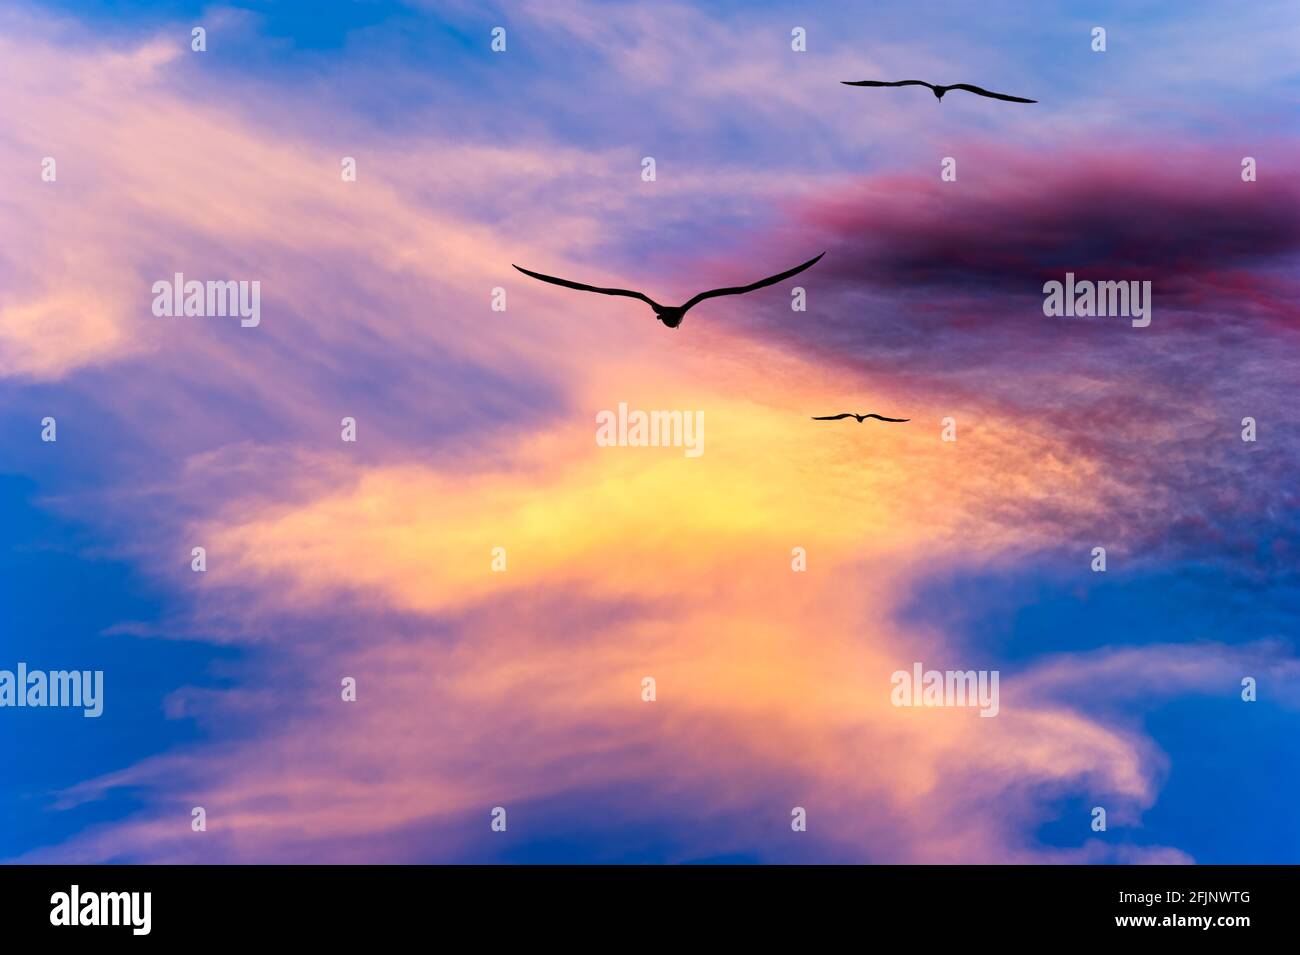 Drei Vögel Fliegen Zusammen Mit Flügeln, Gegen Die Sich Silhouetten Ausbreiten Ein lebendiger, farbenfroher Sonnenuntergang am Himmel Stockfoto